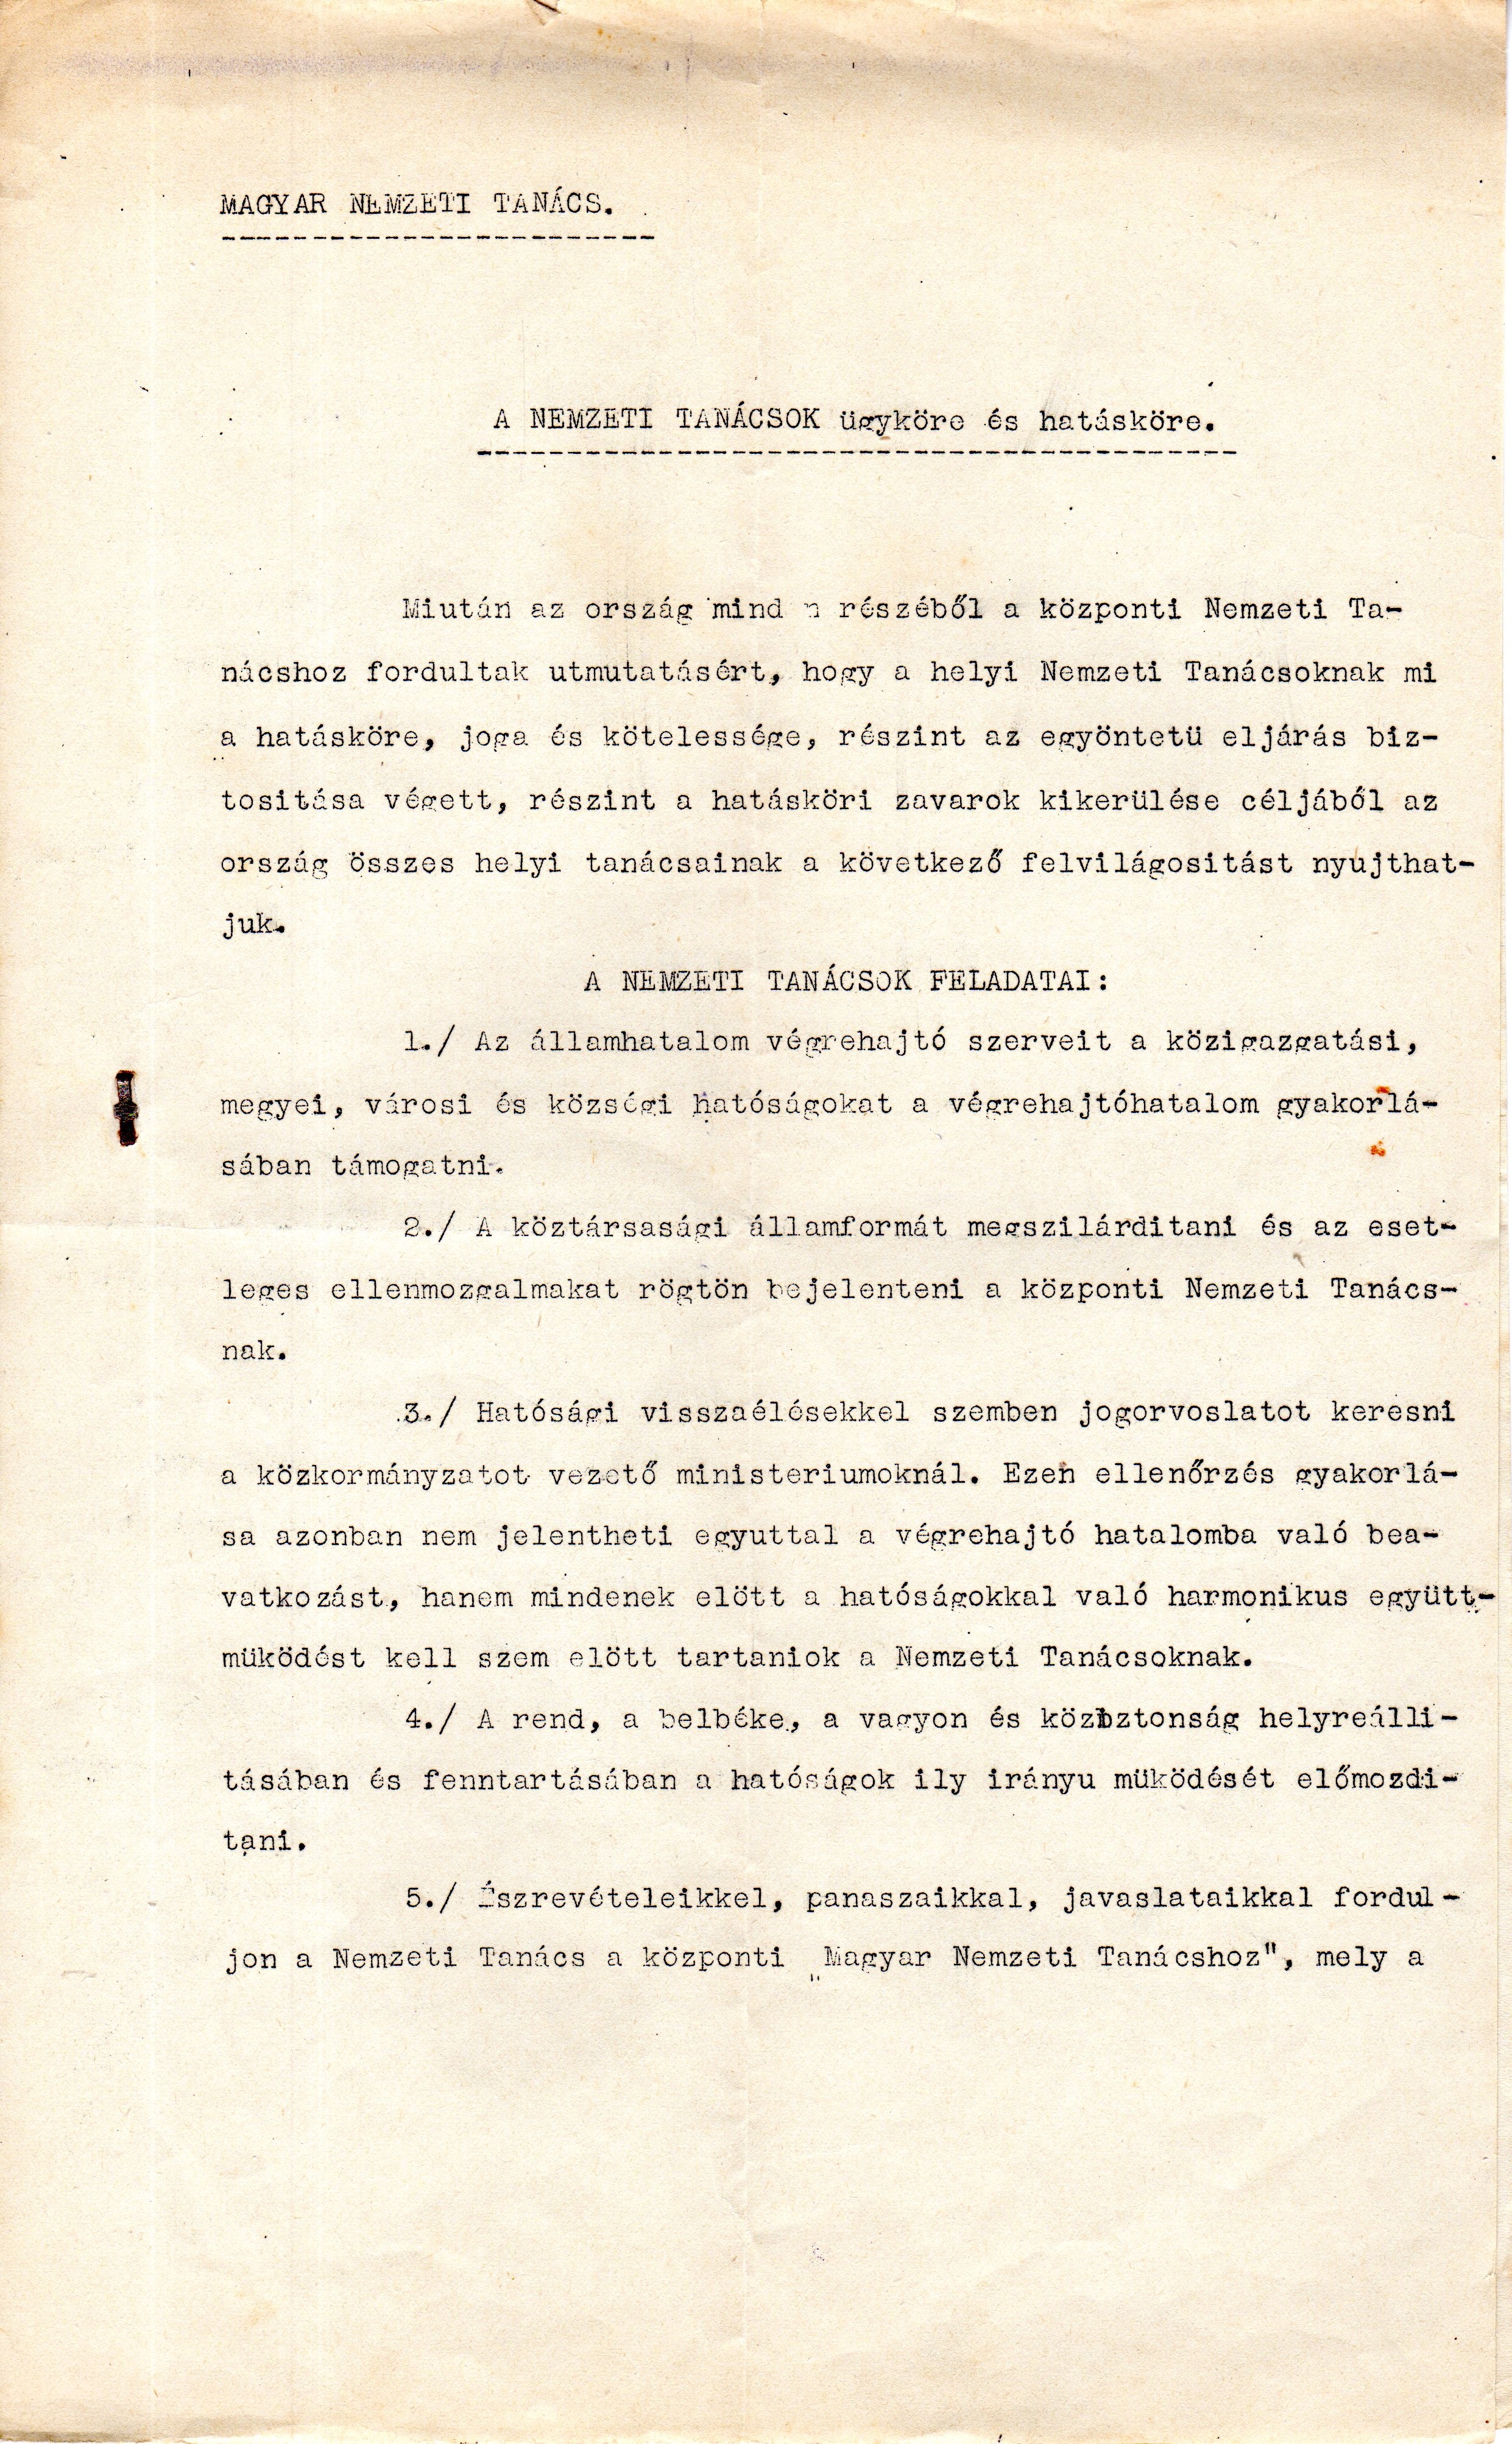 A Magyar Nemzeti Tanács ügyköre és feladatai (Ferenczy Múzeumi Centrum CC BY-NC-SA)